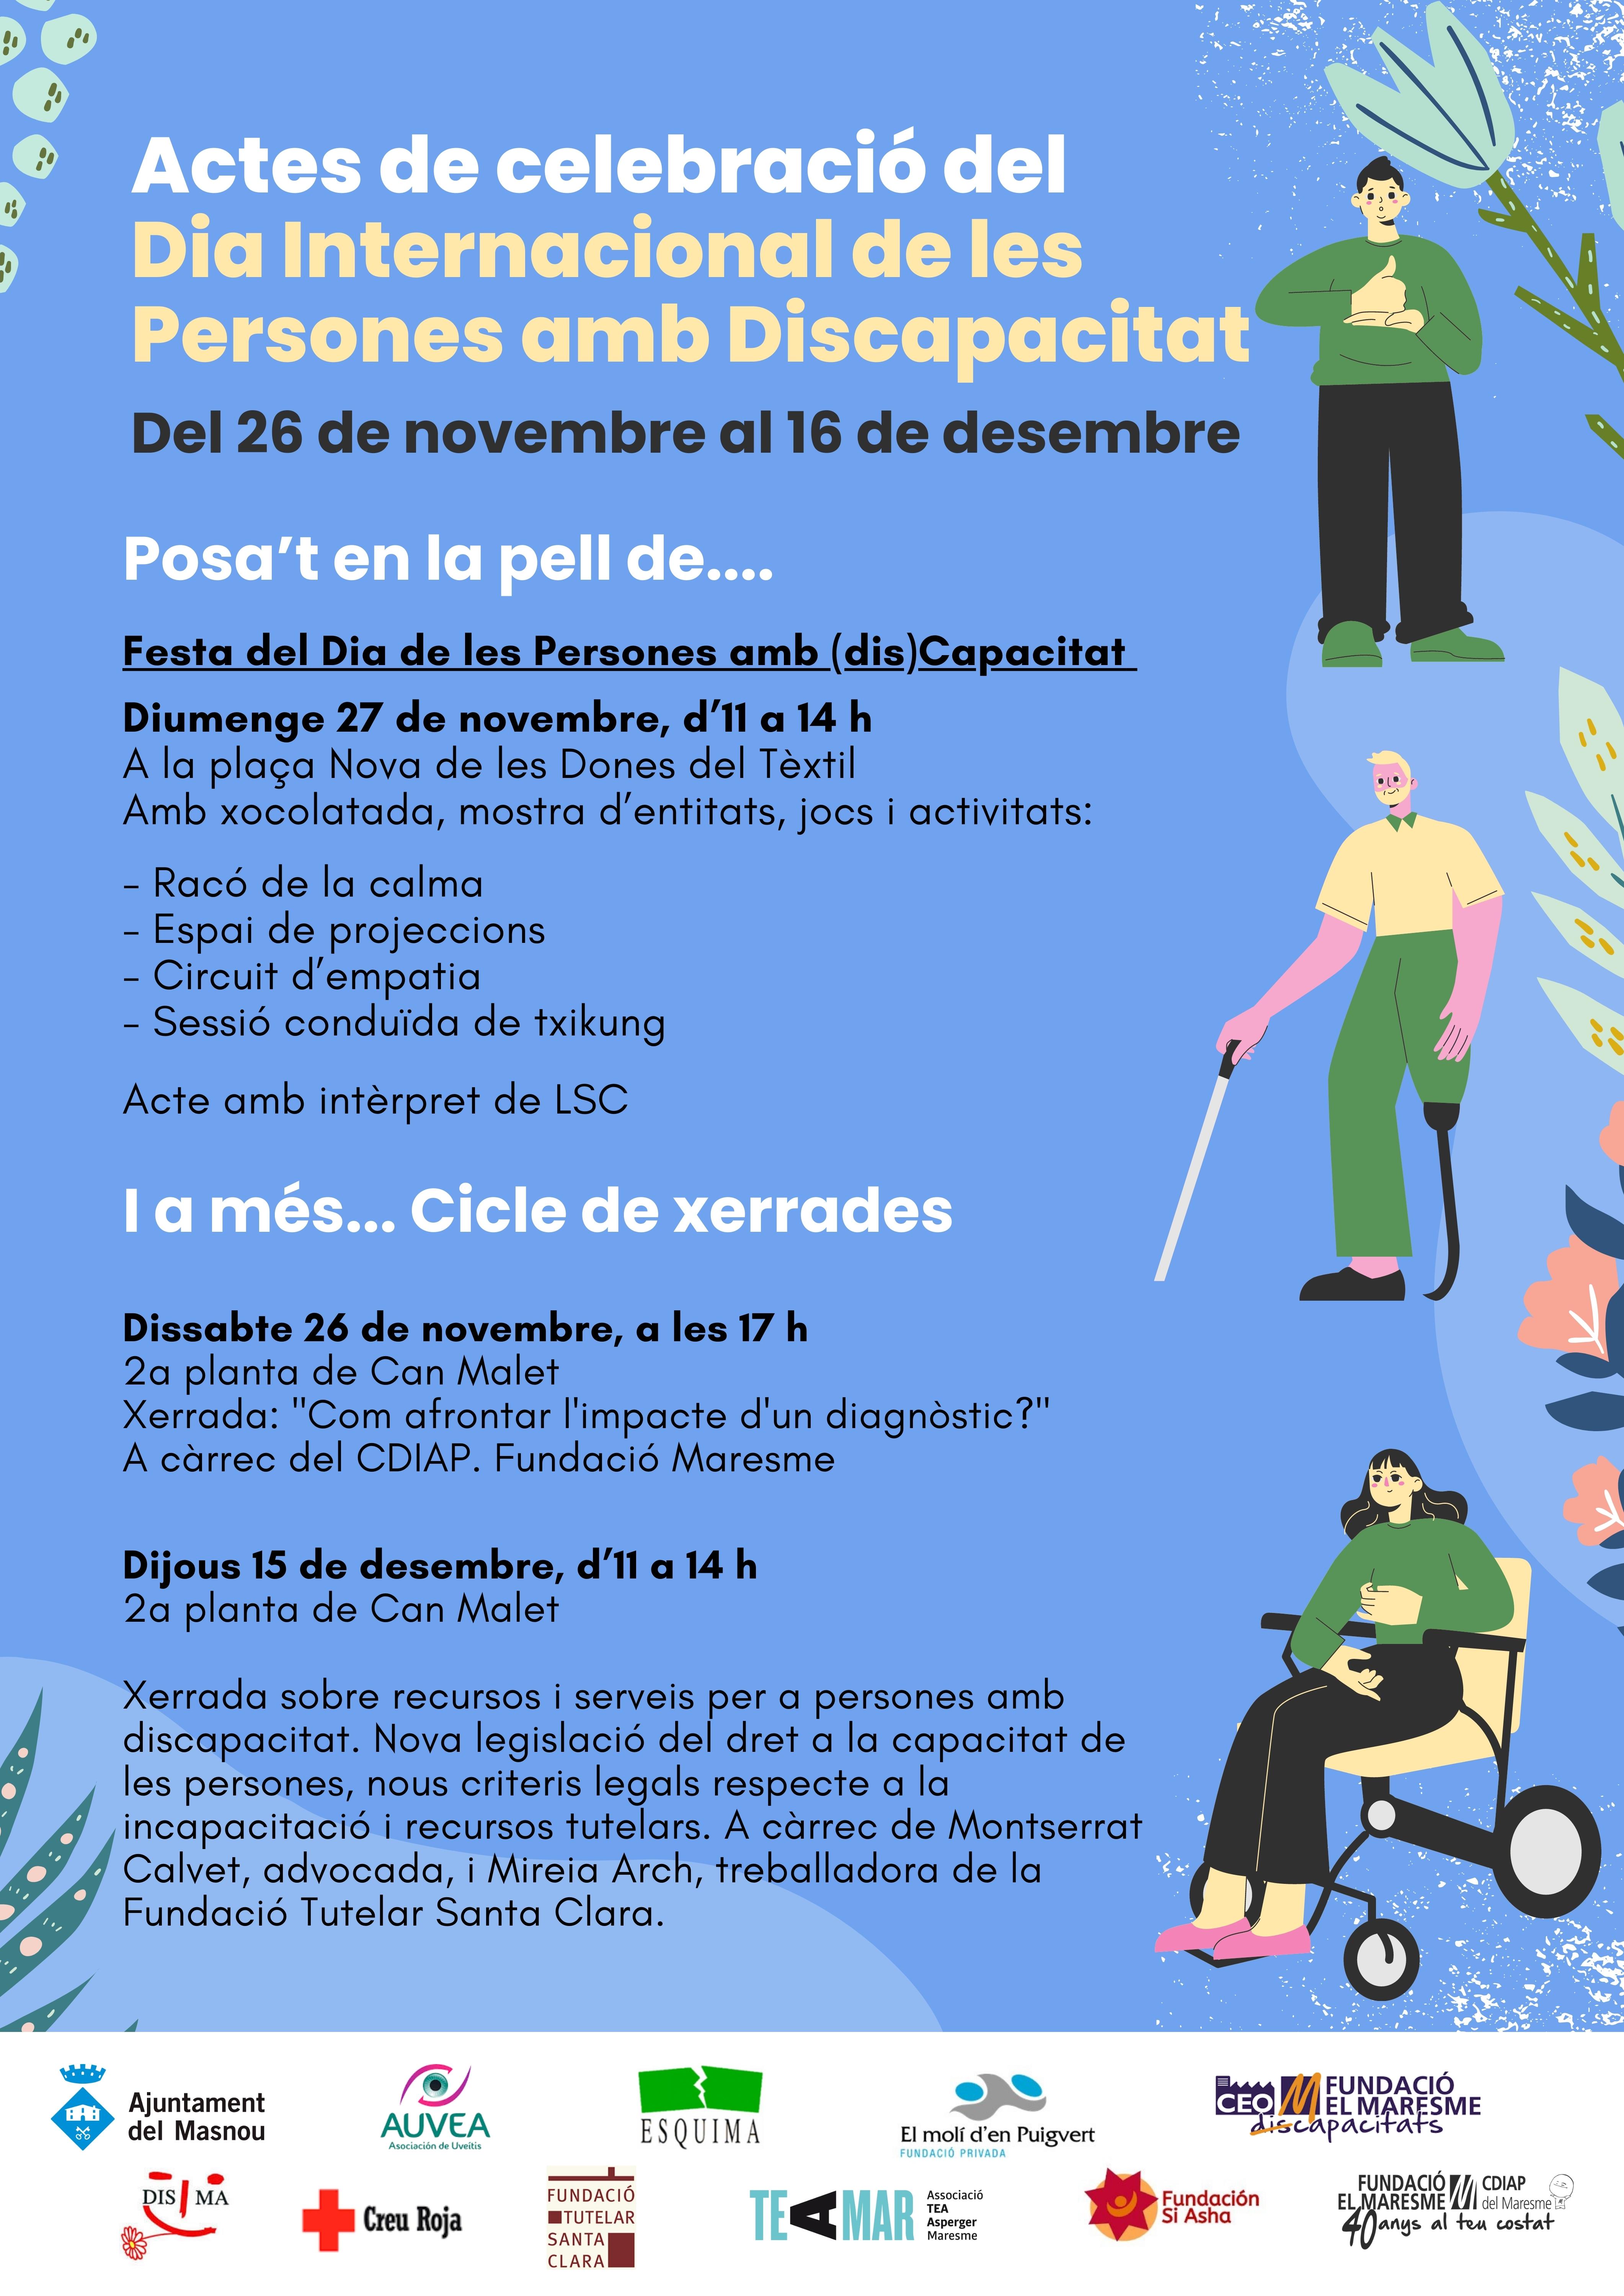 El diumenge 27 se celebra la festa del Dia de les Persones amb Discapacitat